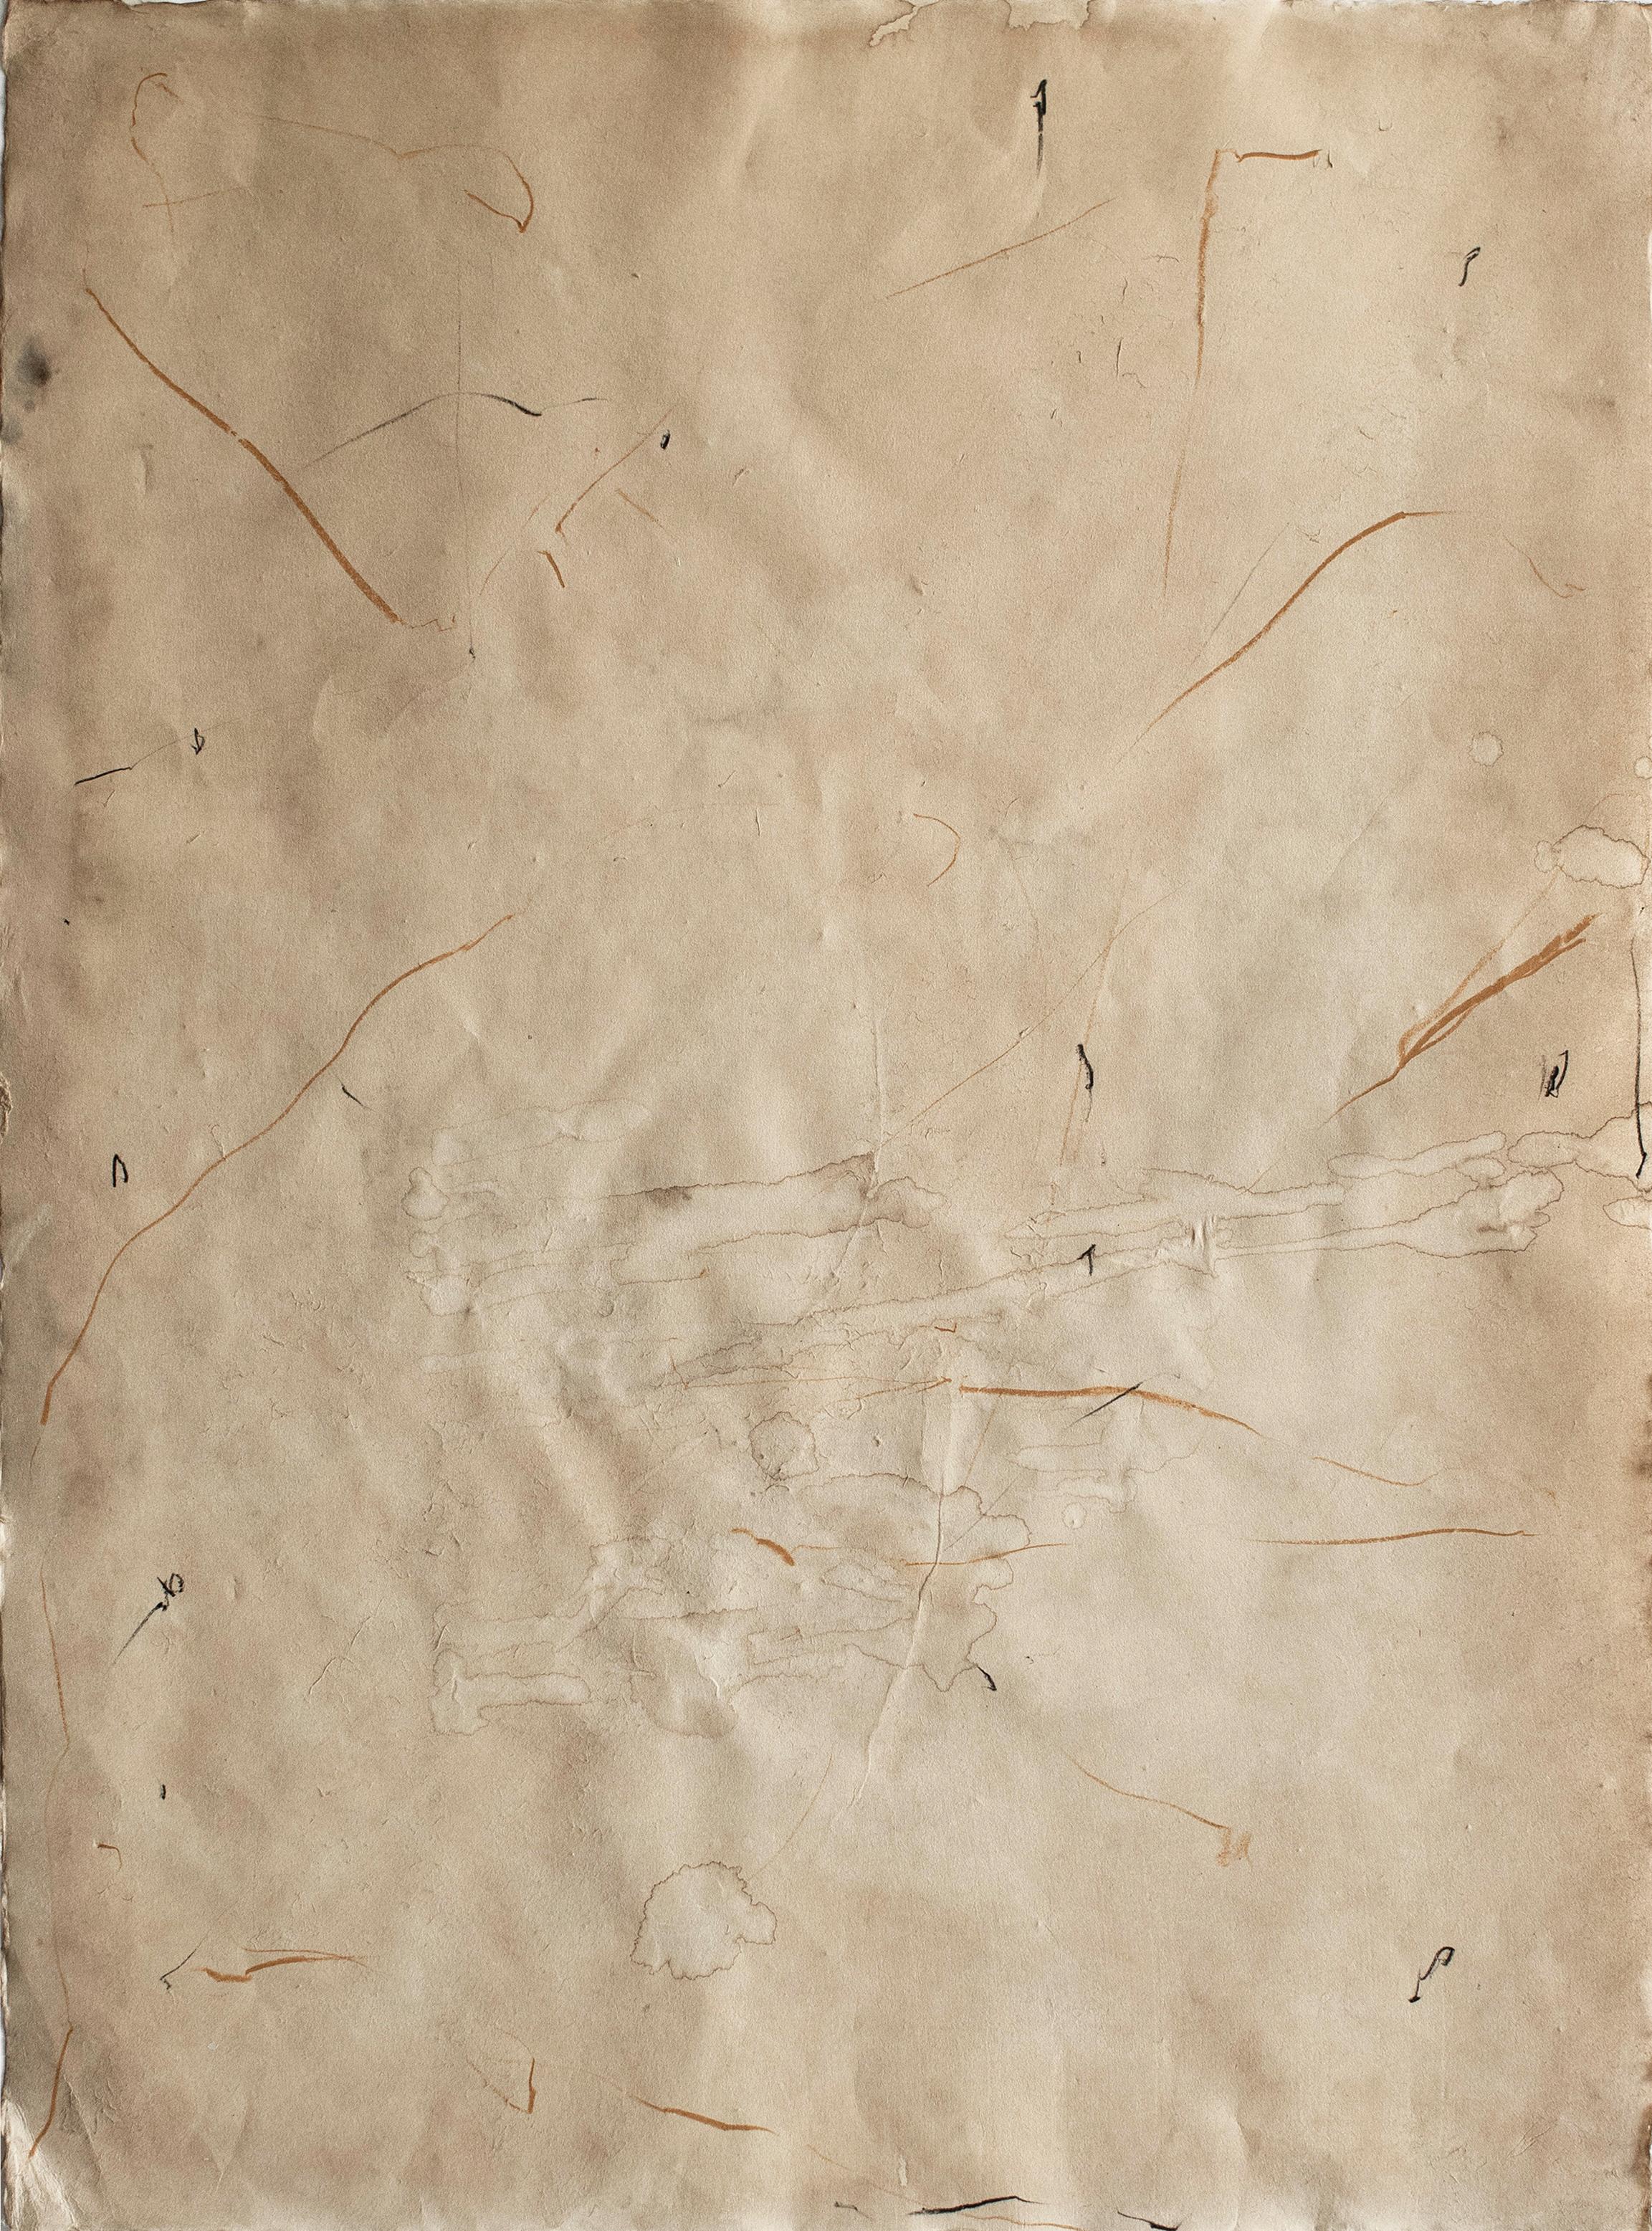 On Hansen Abstract Painting – む, Einzigartige Arbeit auf Papier. Mixed-Media-Gemälde auf Awagami-Papier